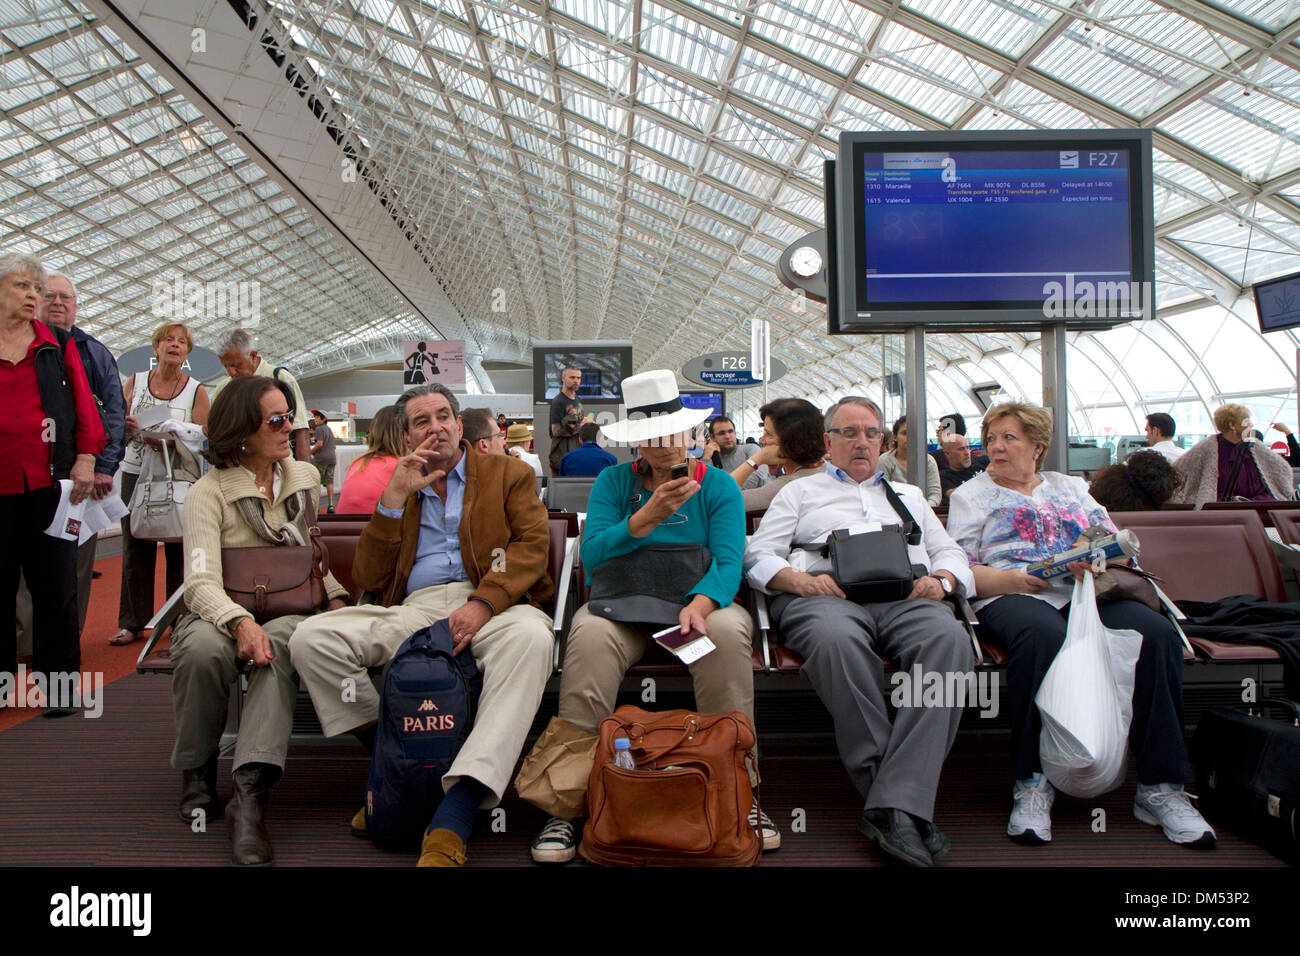 Les voyageurs dans une salle d'attente à l'aéroport Charles de Gaulle, Paris, France. Banque D'Images